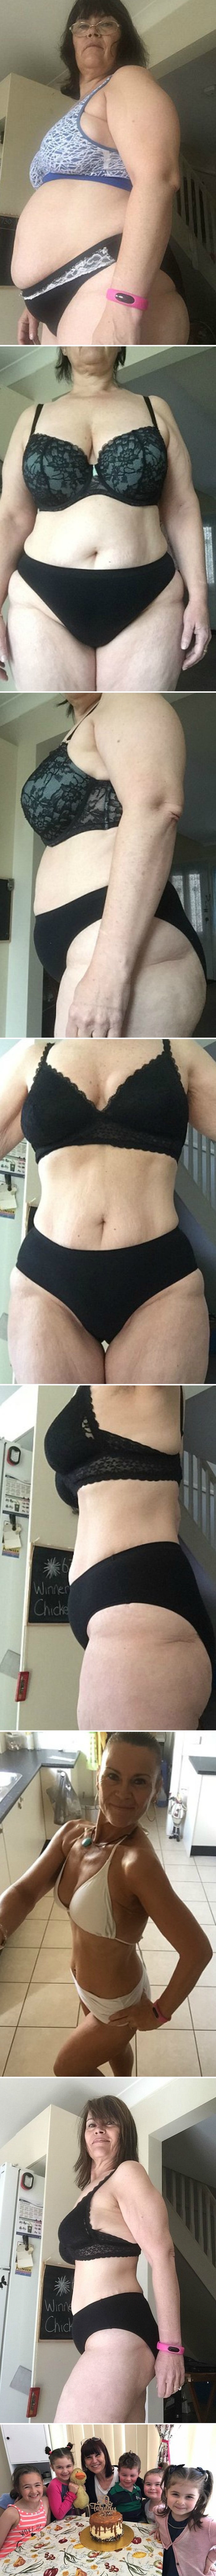 ČUDESNA PROMJENA Žena otkrila kako je u 3 mjeseca skinula 30 kg - bez vježbanja!